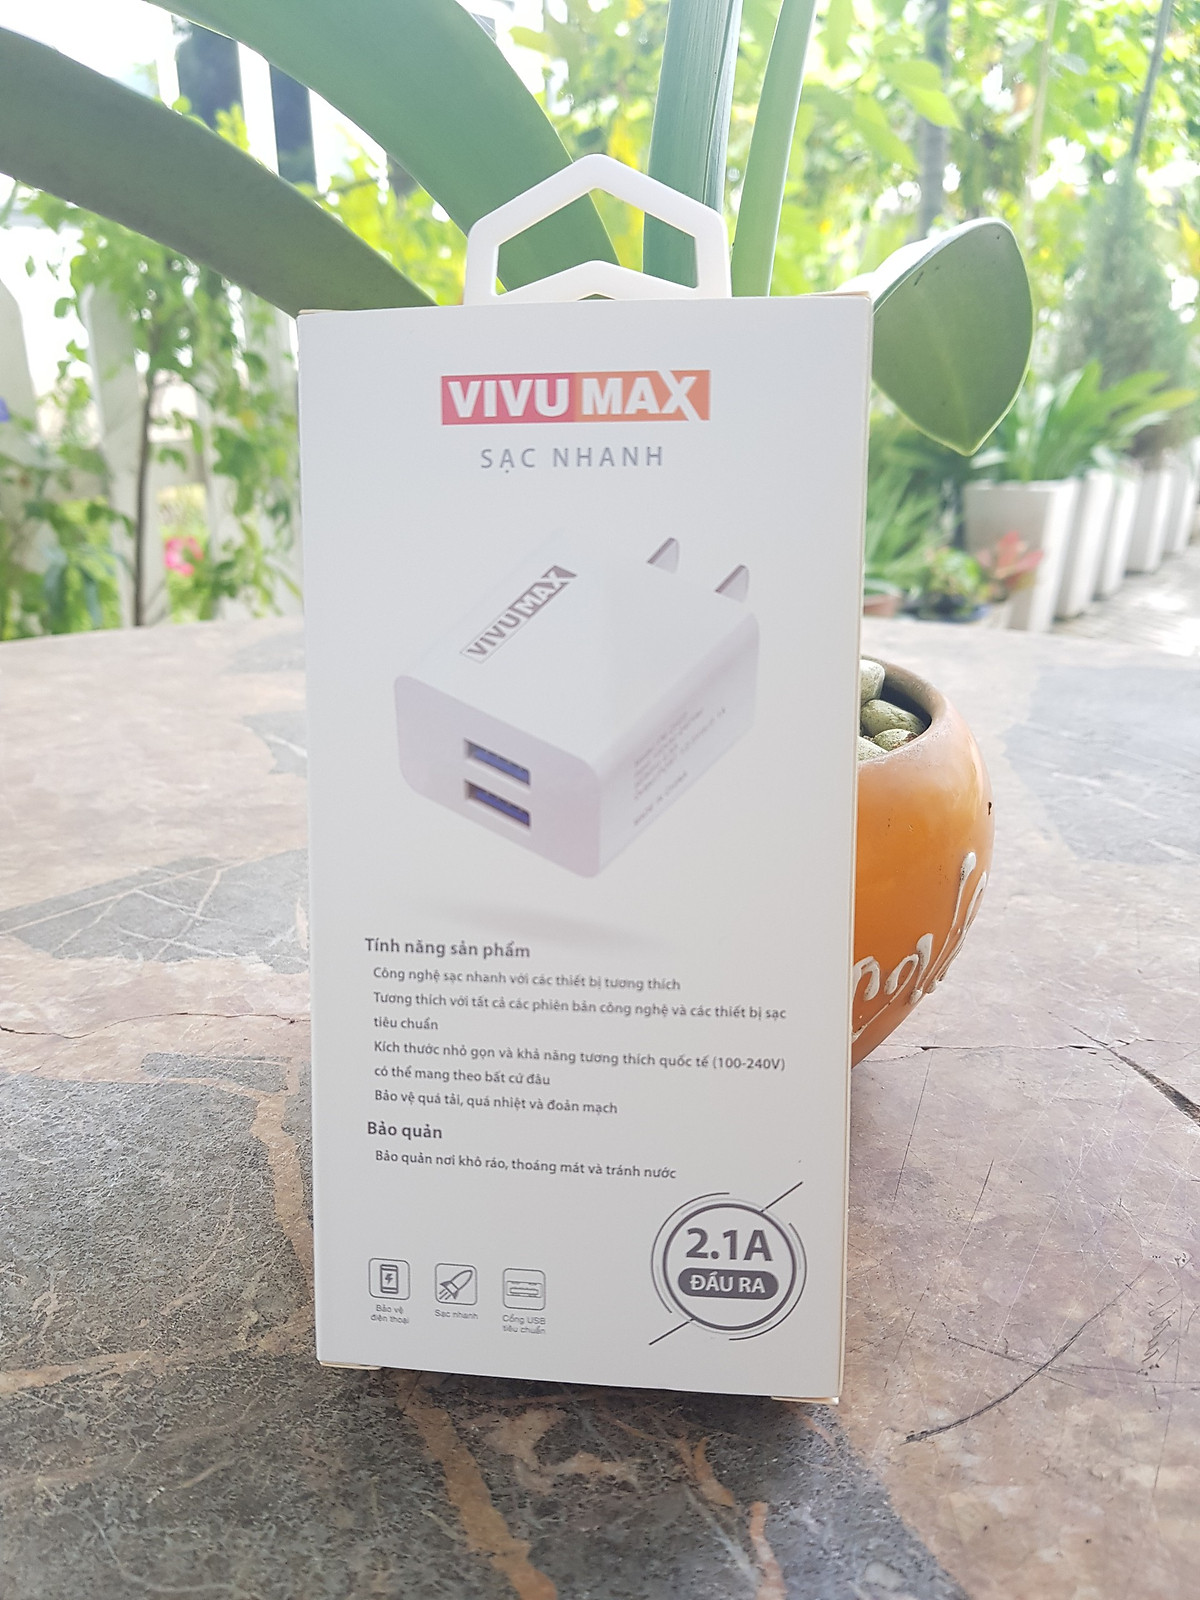 Adapter Sạc nhanh VivuMax CH22 - 2 cổng USB 5V-2.1A thuận Hàng Chính Hãng CHINH HANG n